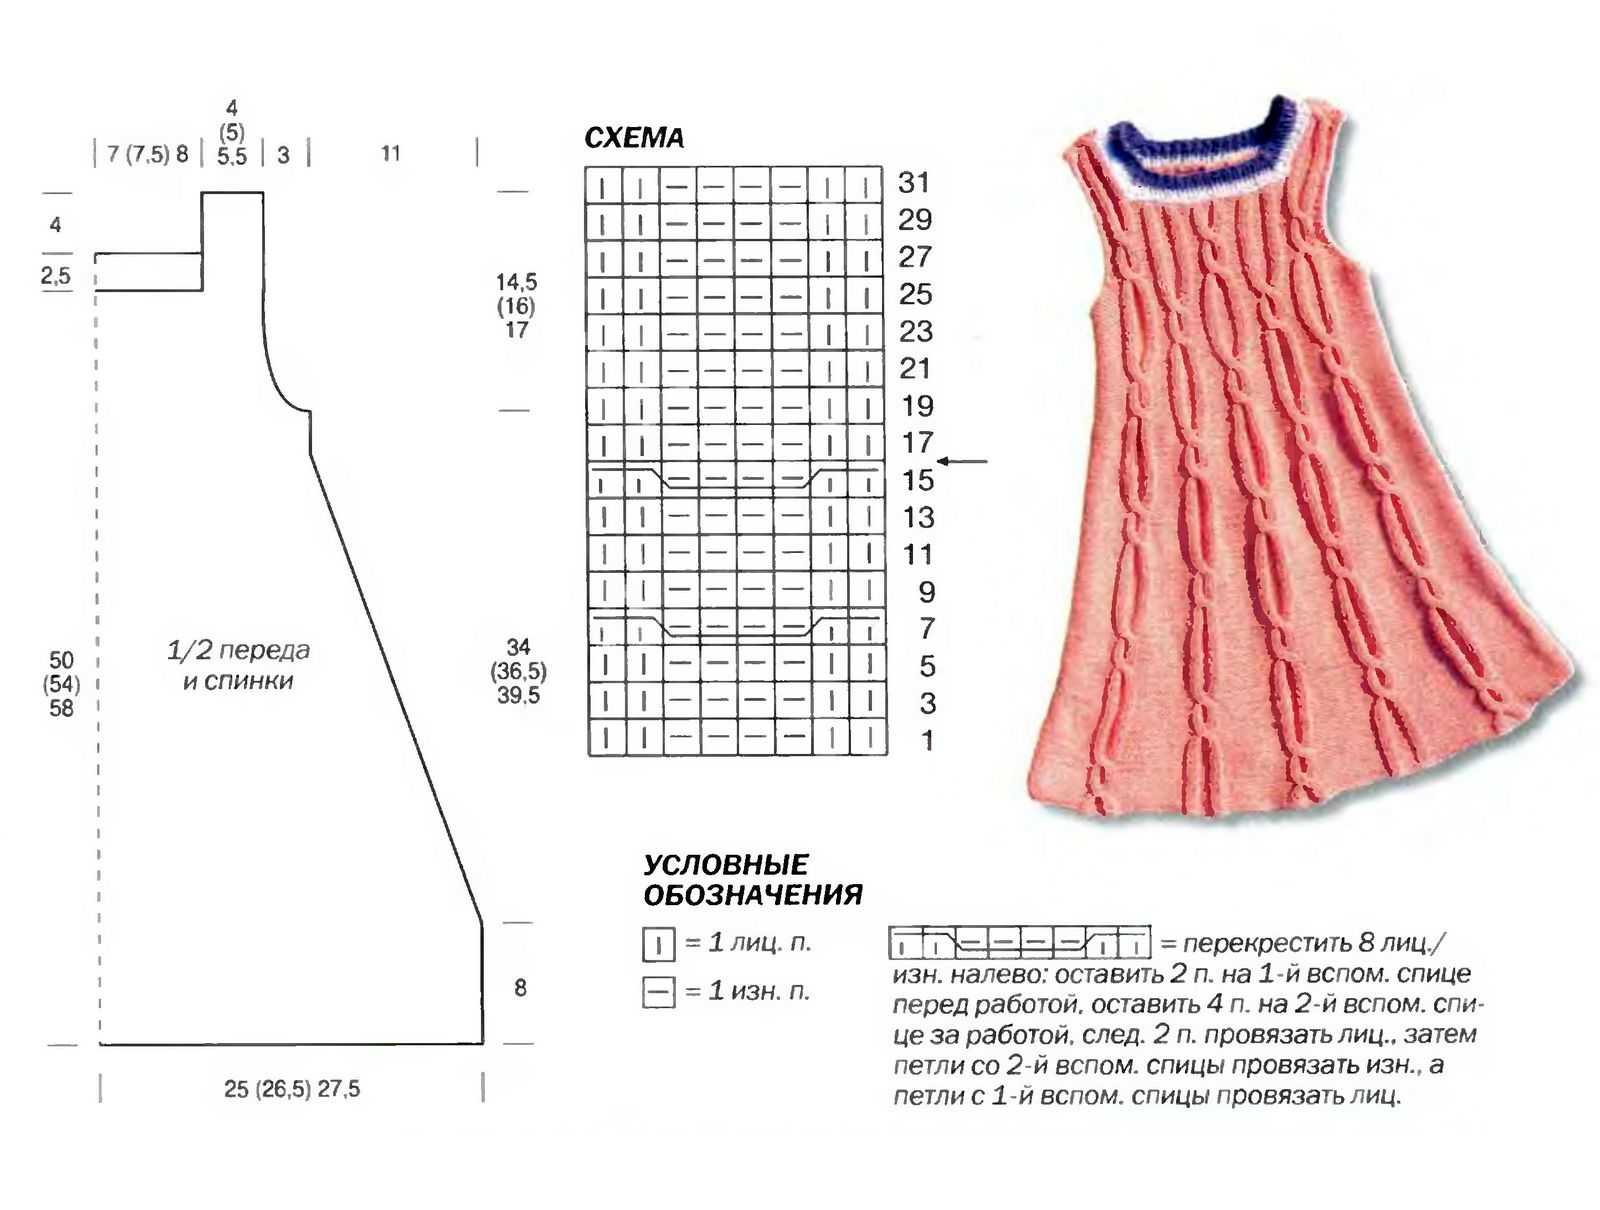 Вязание спицами для детей от 1 до 3 лет - схемы для девочек - кофты, юбки, платья